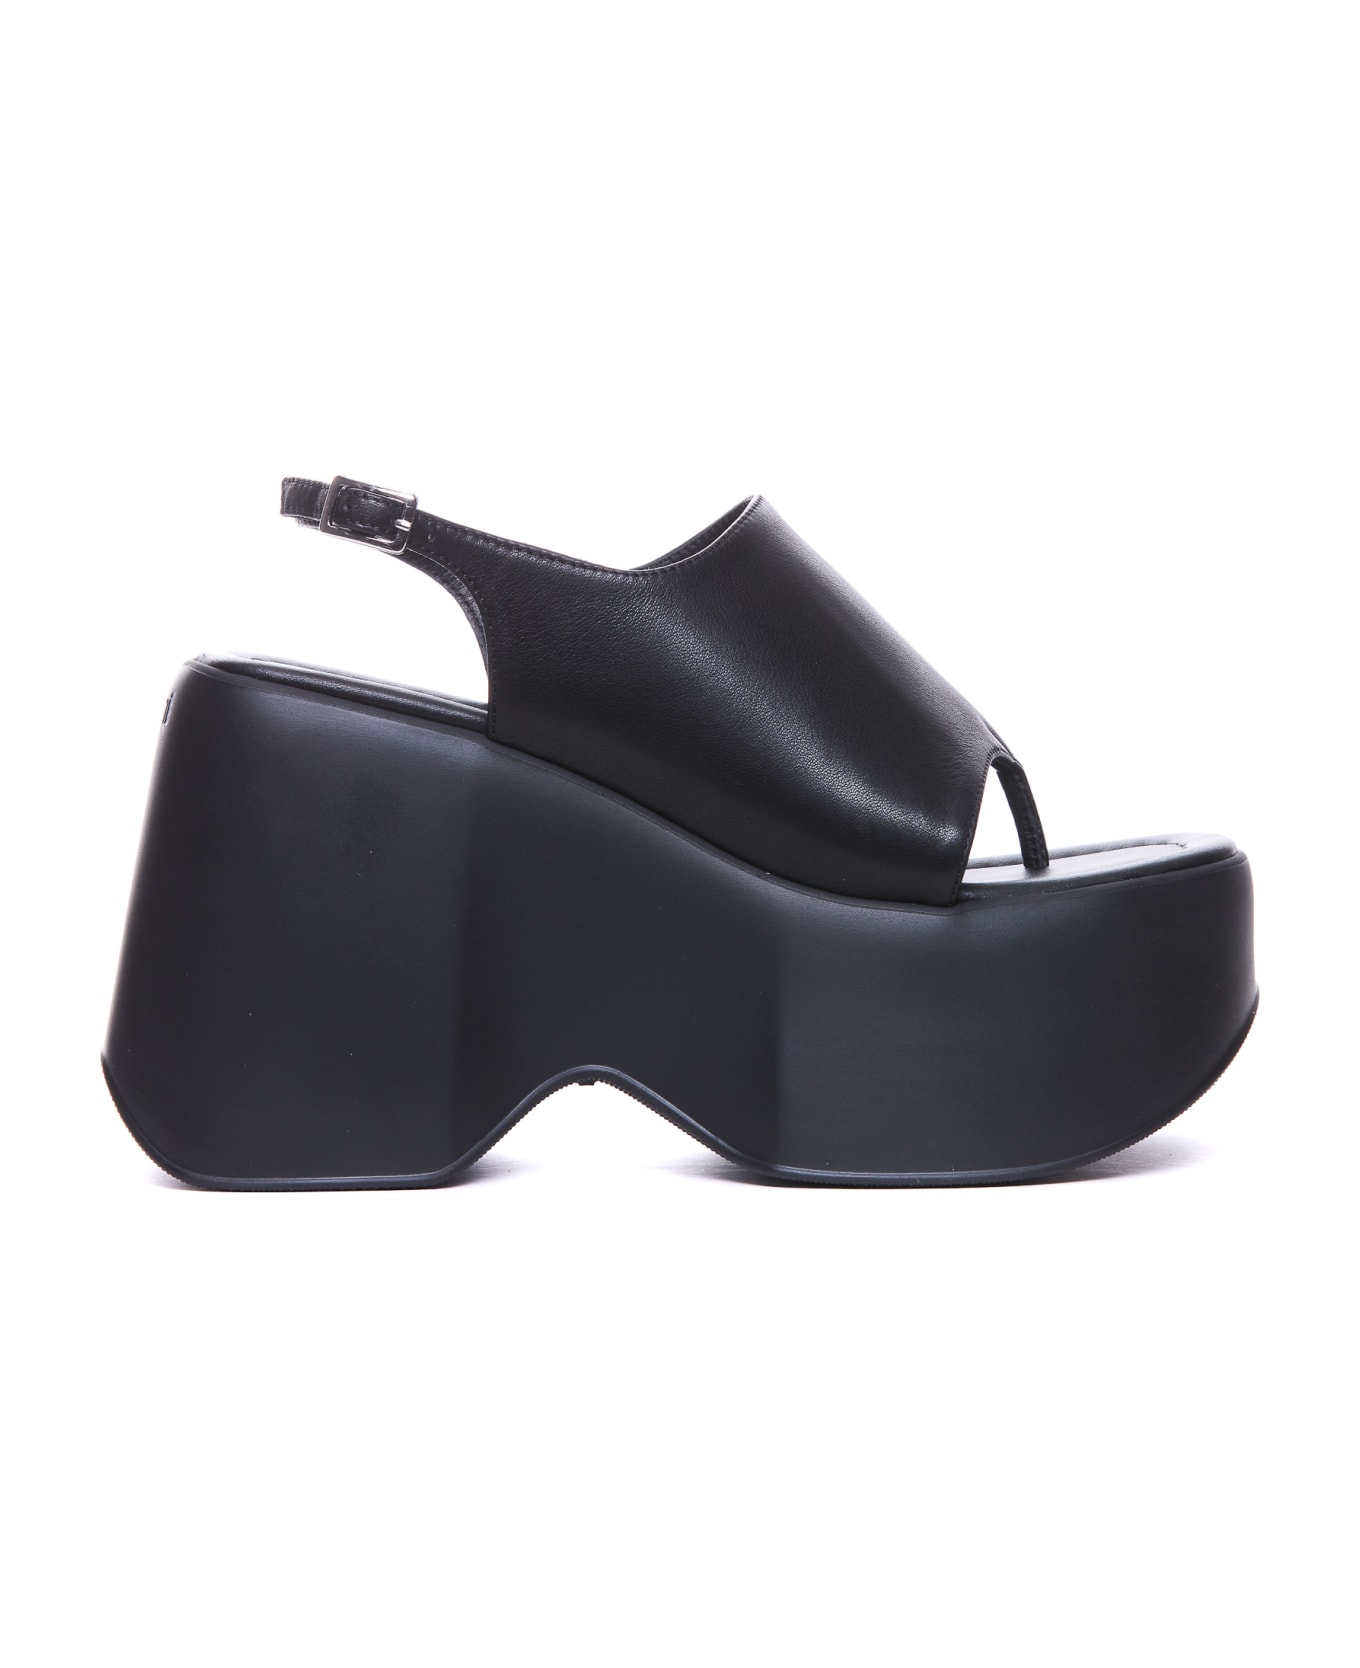 Vic Matié Travel Pump Sandals - Black